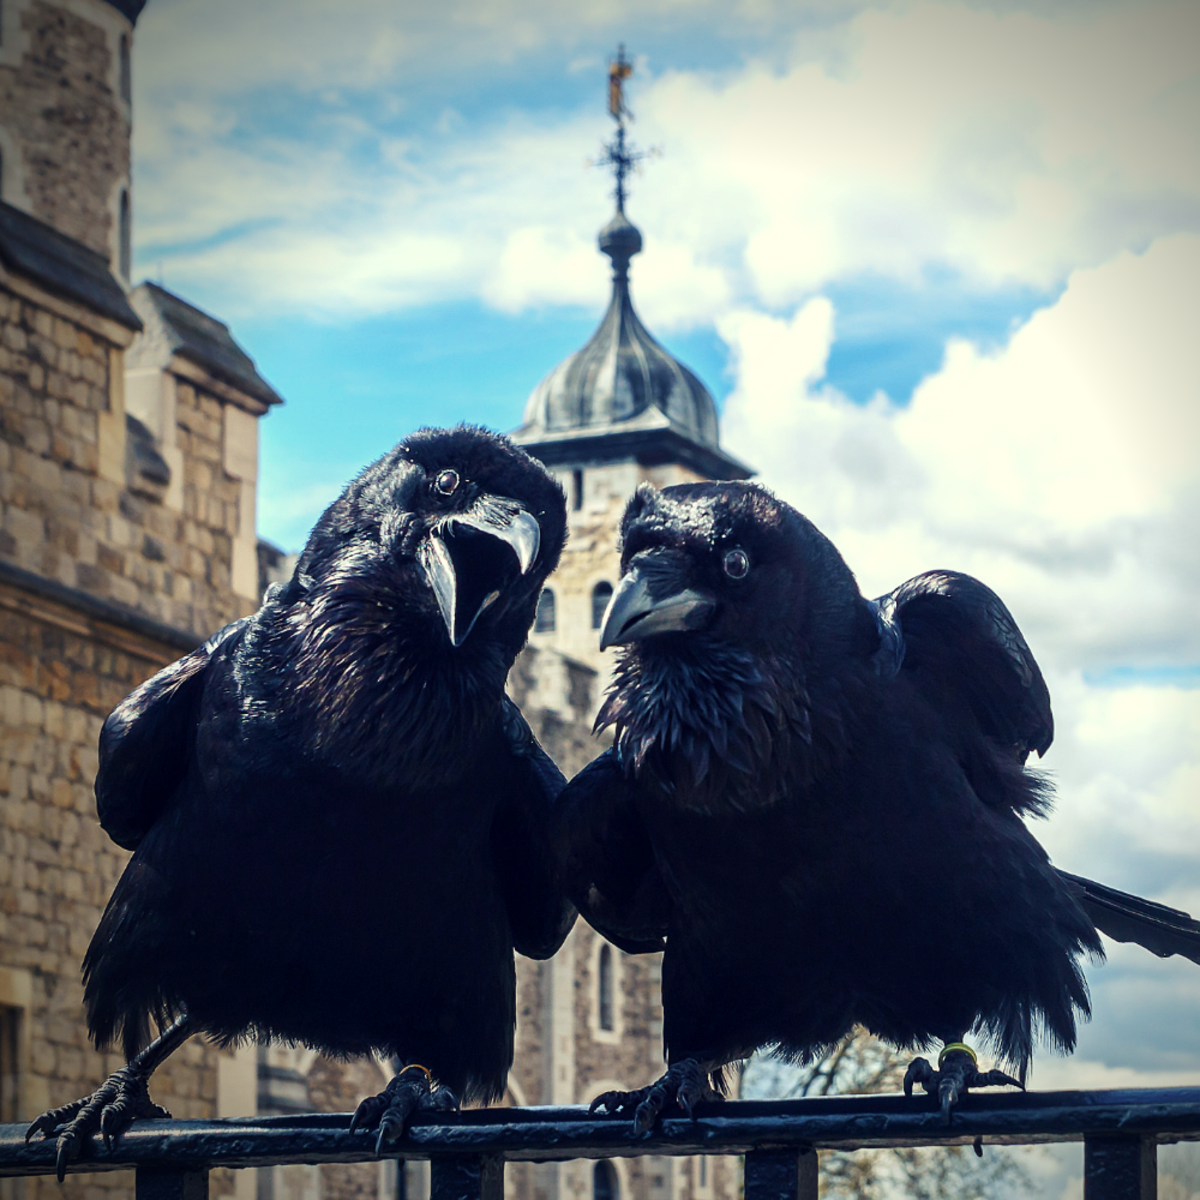 乌鸦并不总是带来坏运气。人们对伦敦塔上的幸运乌鸦非常迷信，他们会剪断这些鸟的翅膀，以确保它们永远不会离开。